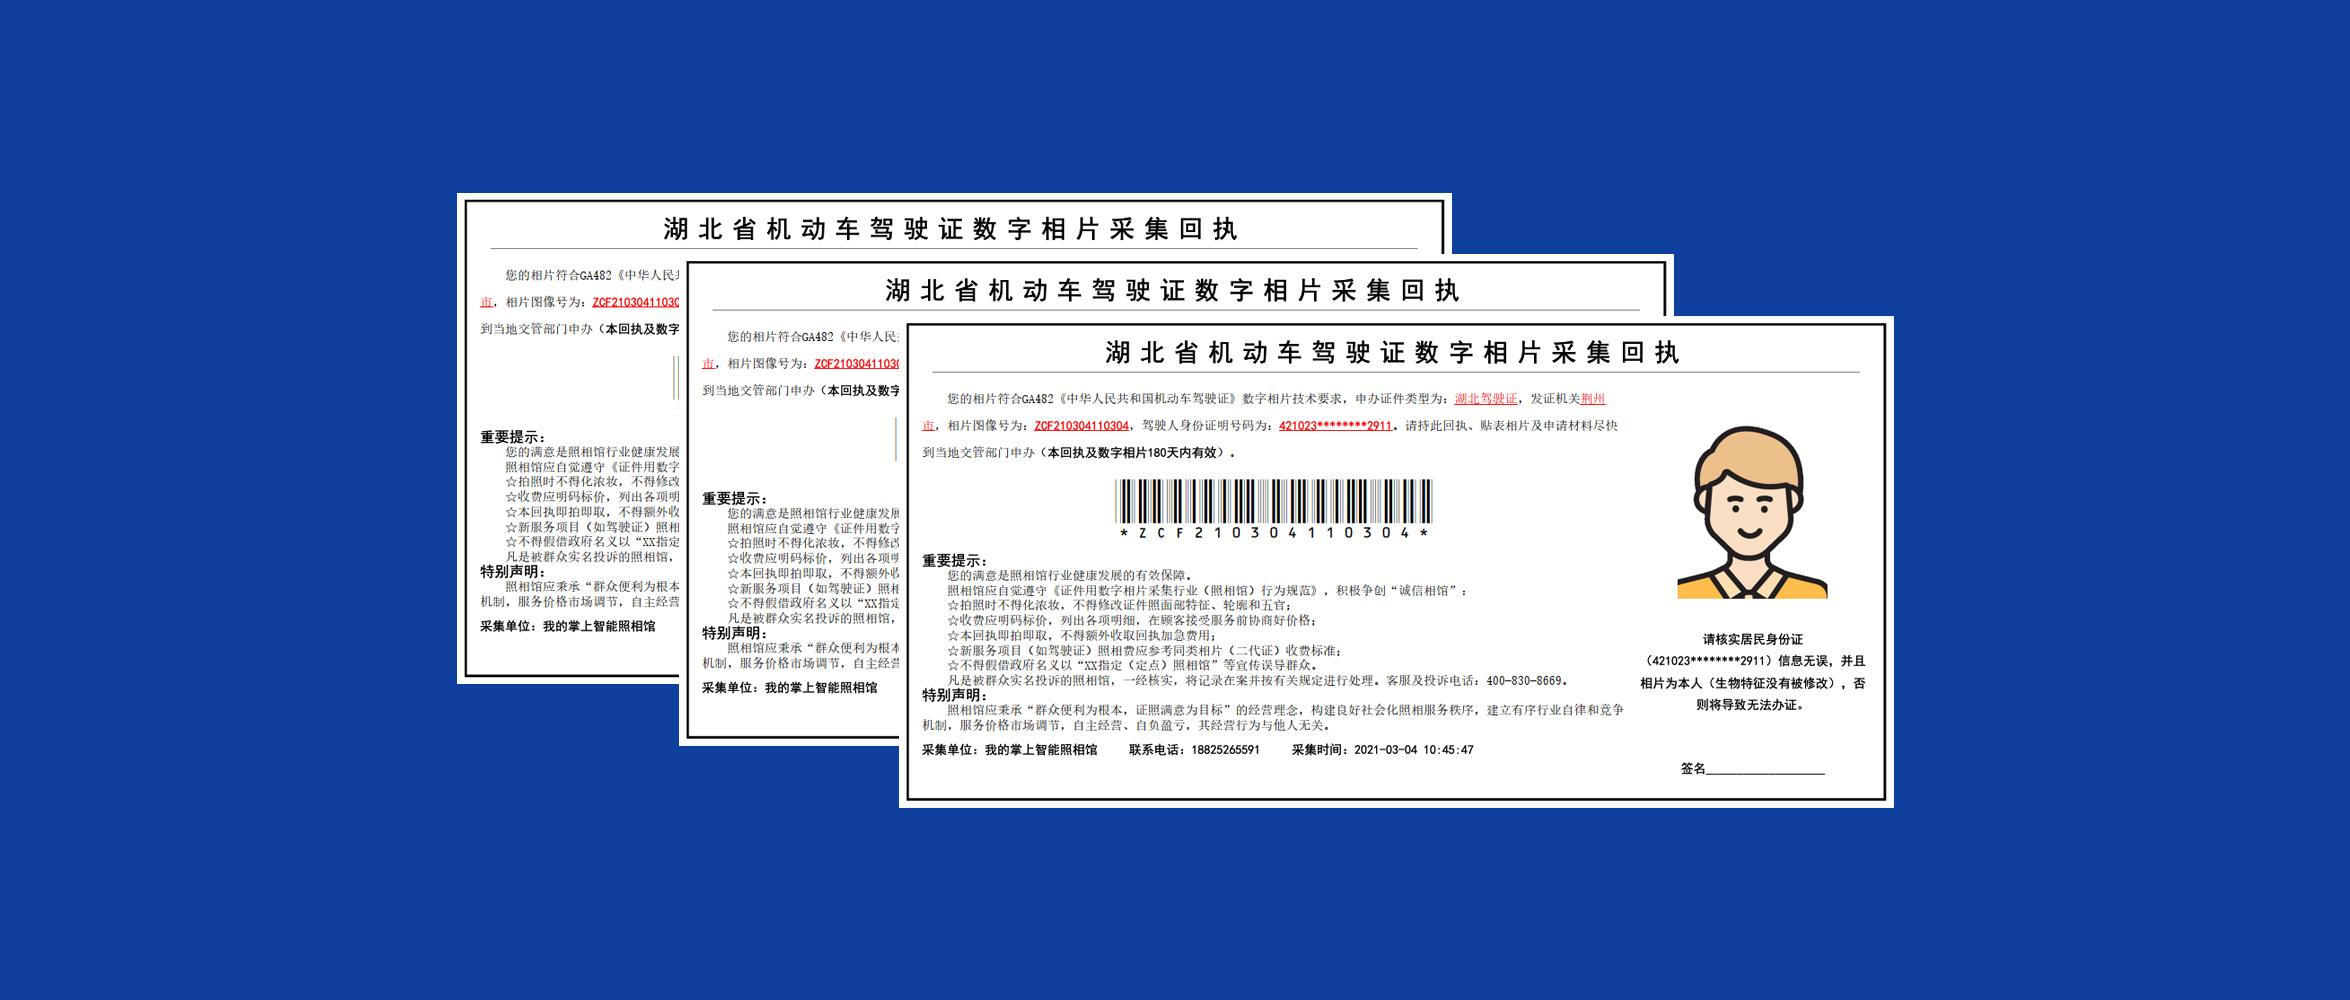 教你如何在线获取湖北省荆州市驾驶证照片回执